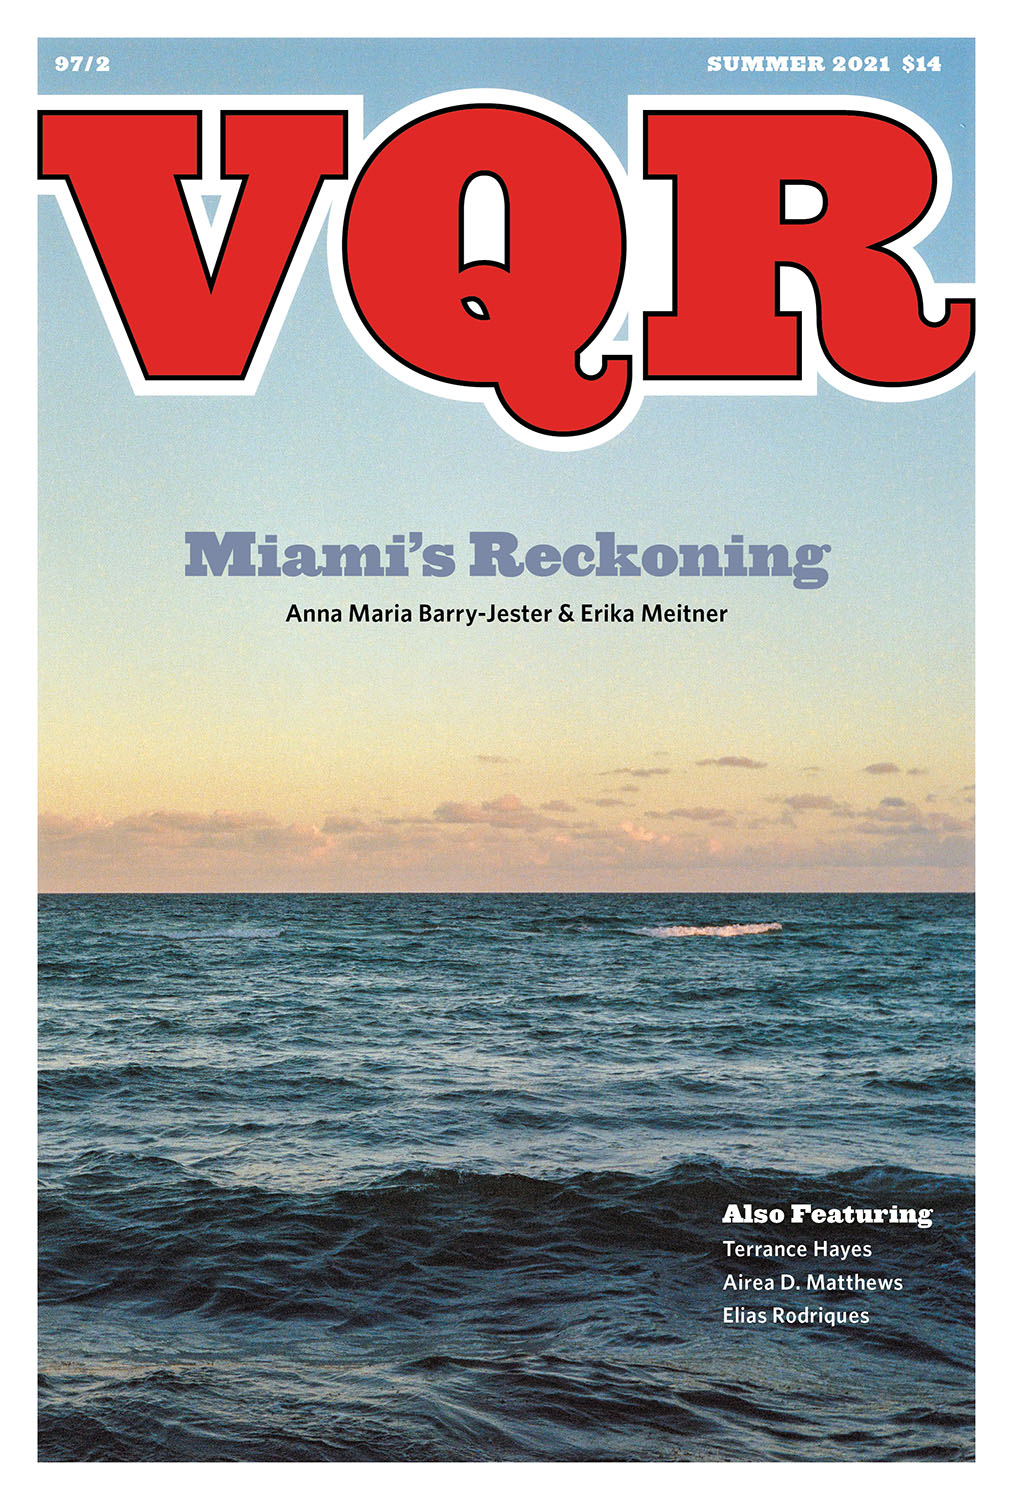 Virginia Quarterly Review, Summer 2021 cover